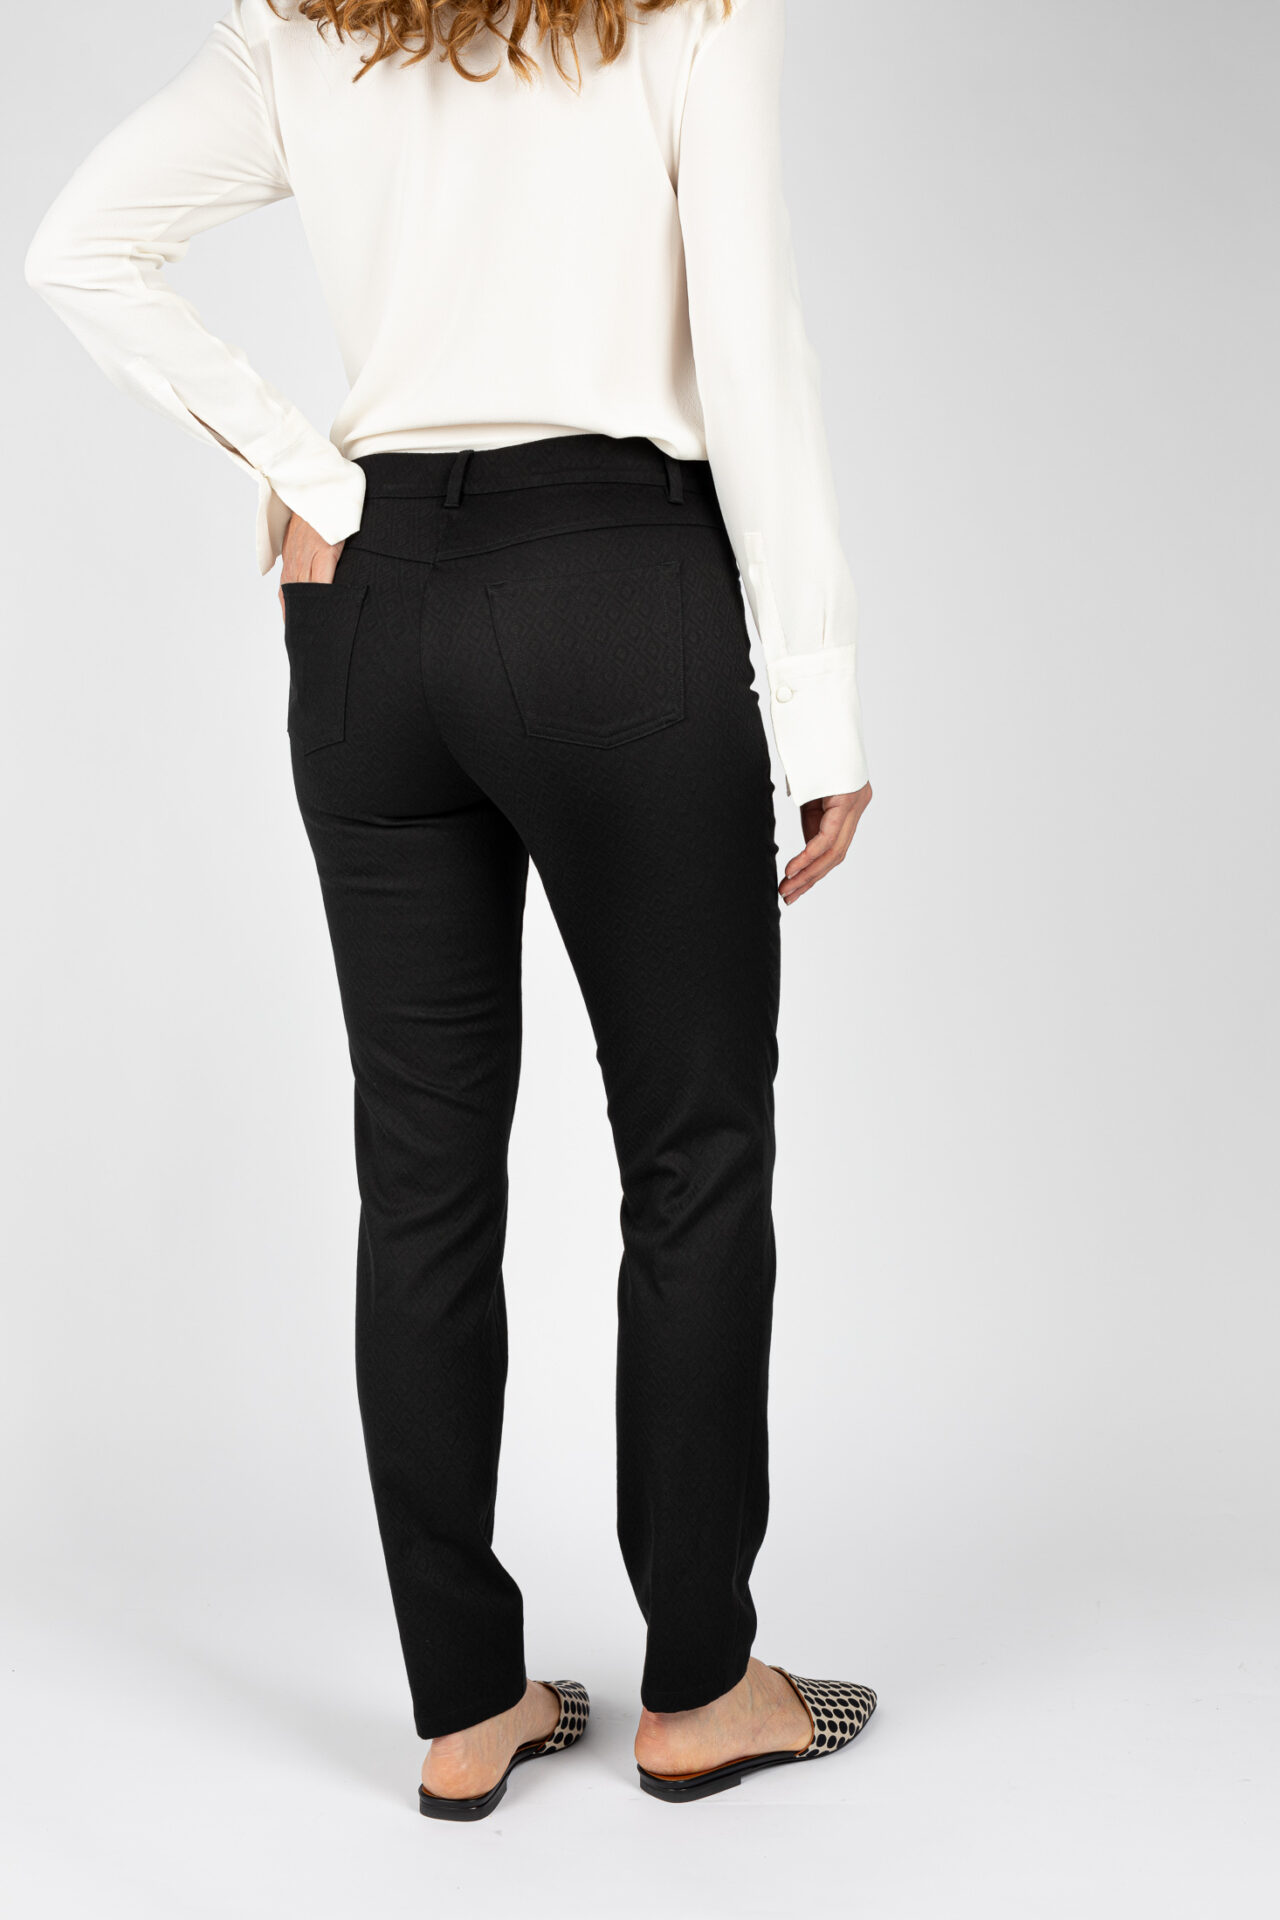 Pantaloni modello Jeans gamba regolare colore nero da donna P19630T57 - 5